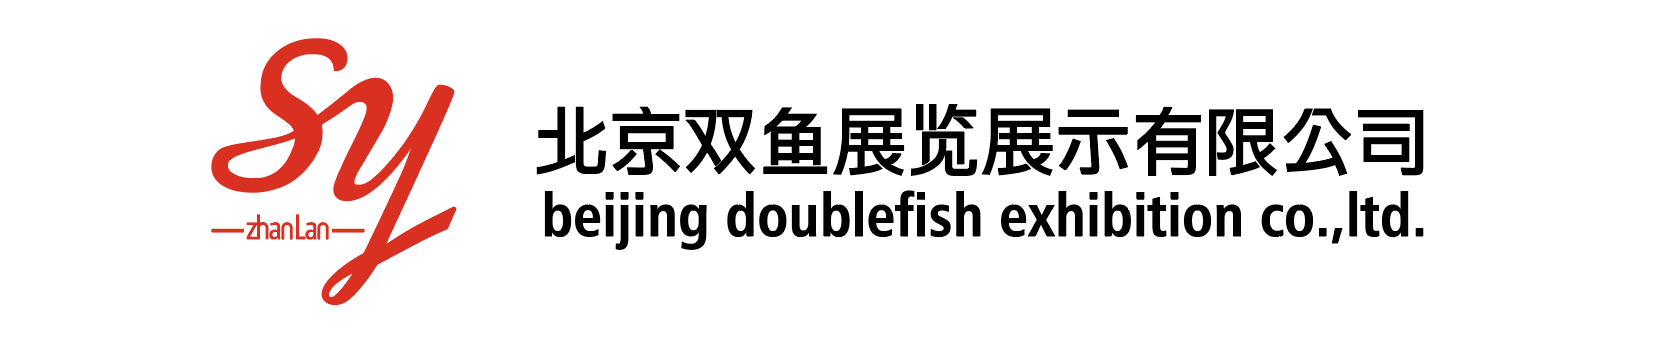 北京双鱼展览展示有限公司